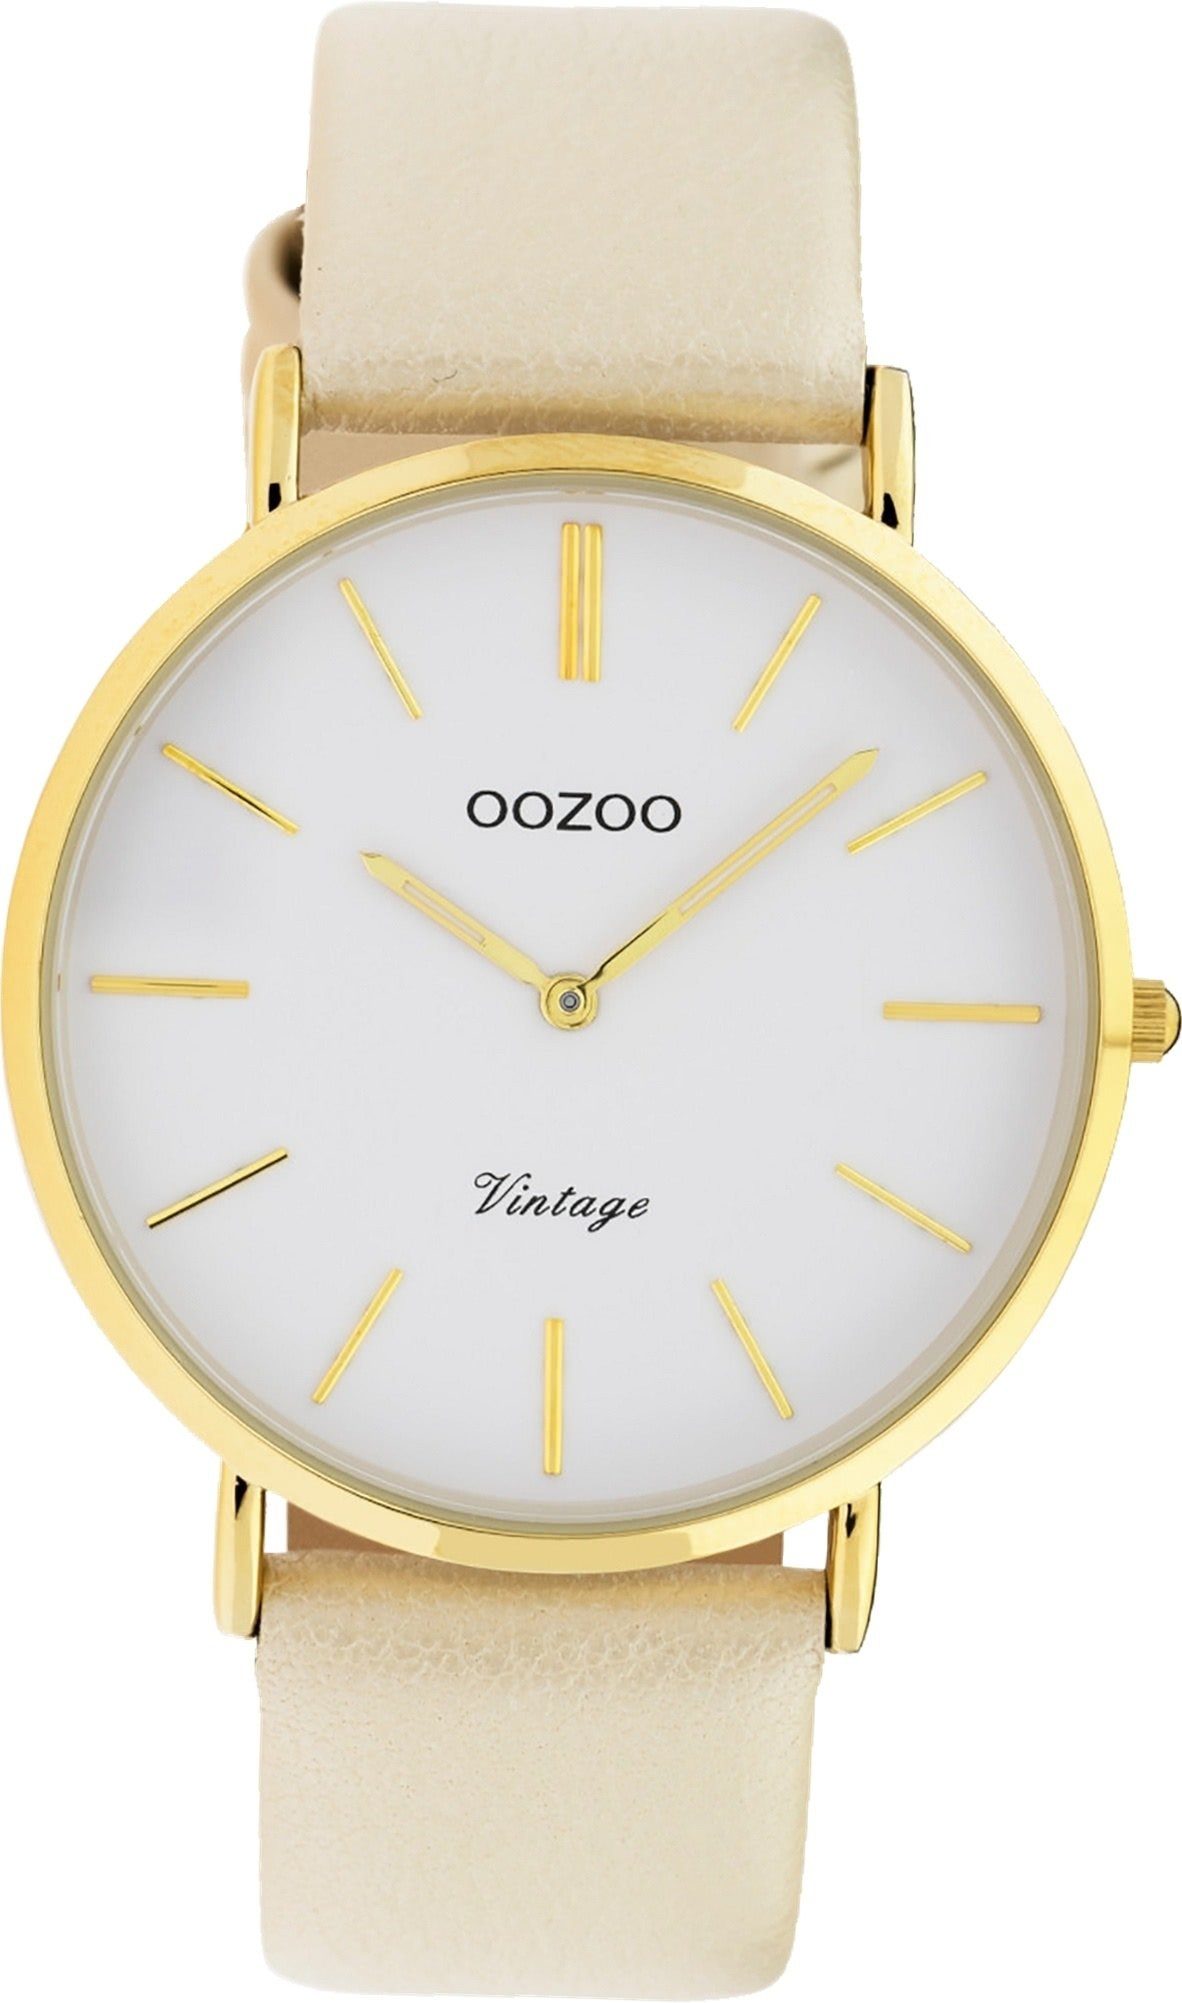 OOZOO Quarzuhr Oozoo Leder Damen Uhr C9961 Analog, (Analoguhr), Damenuhr Lederarmband creme, rundes Gehäuse, groß (ca. 40mm)